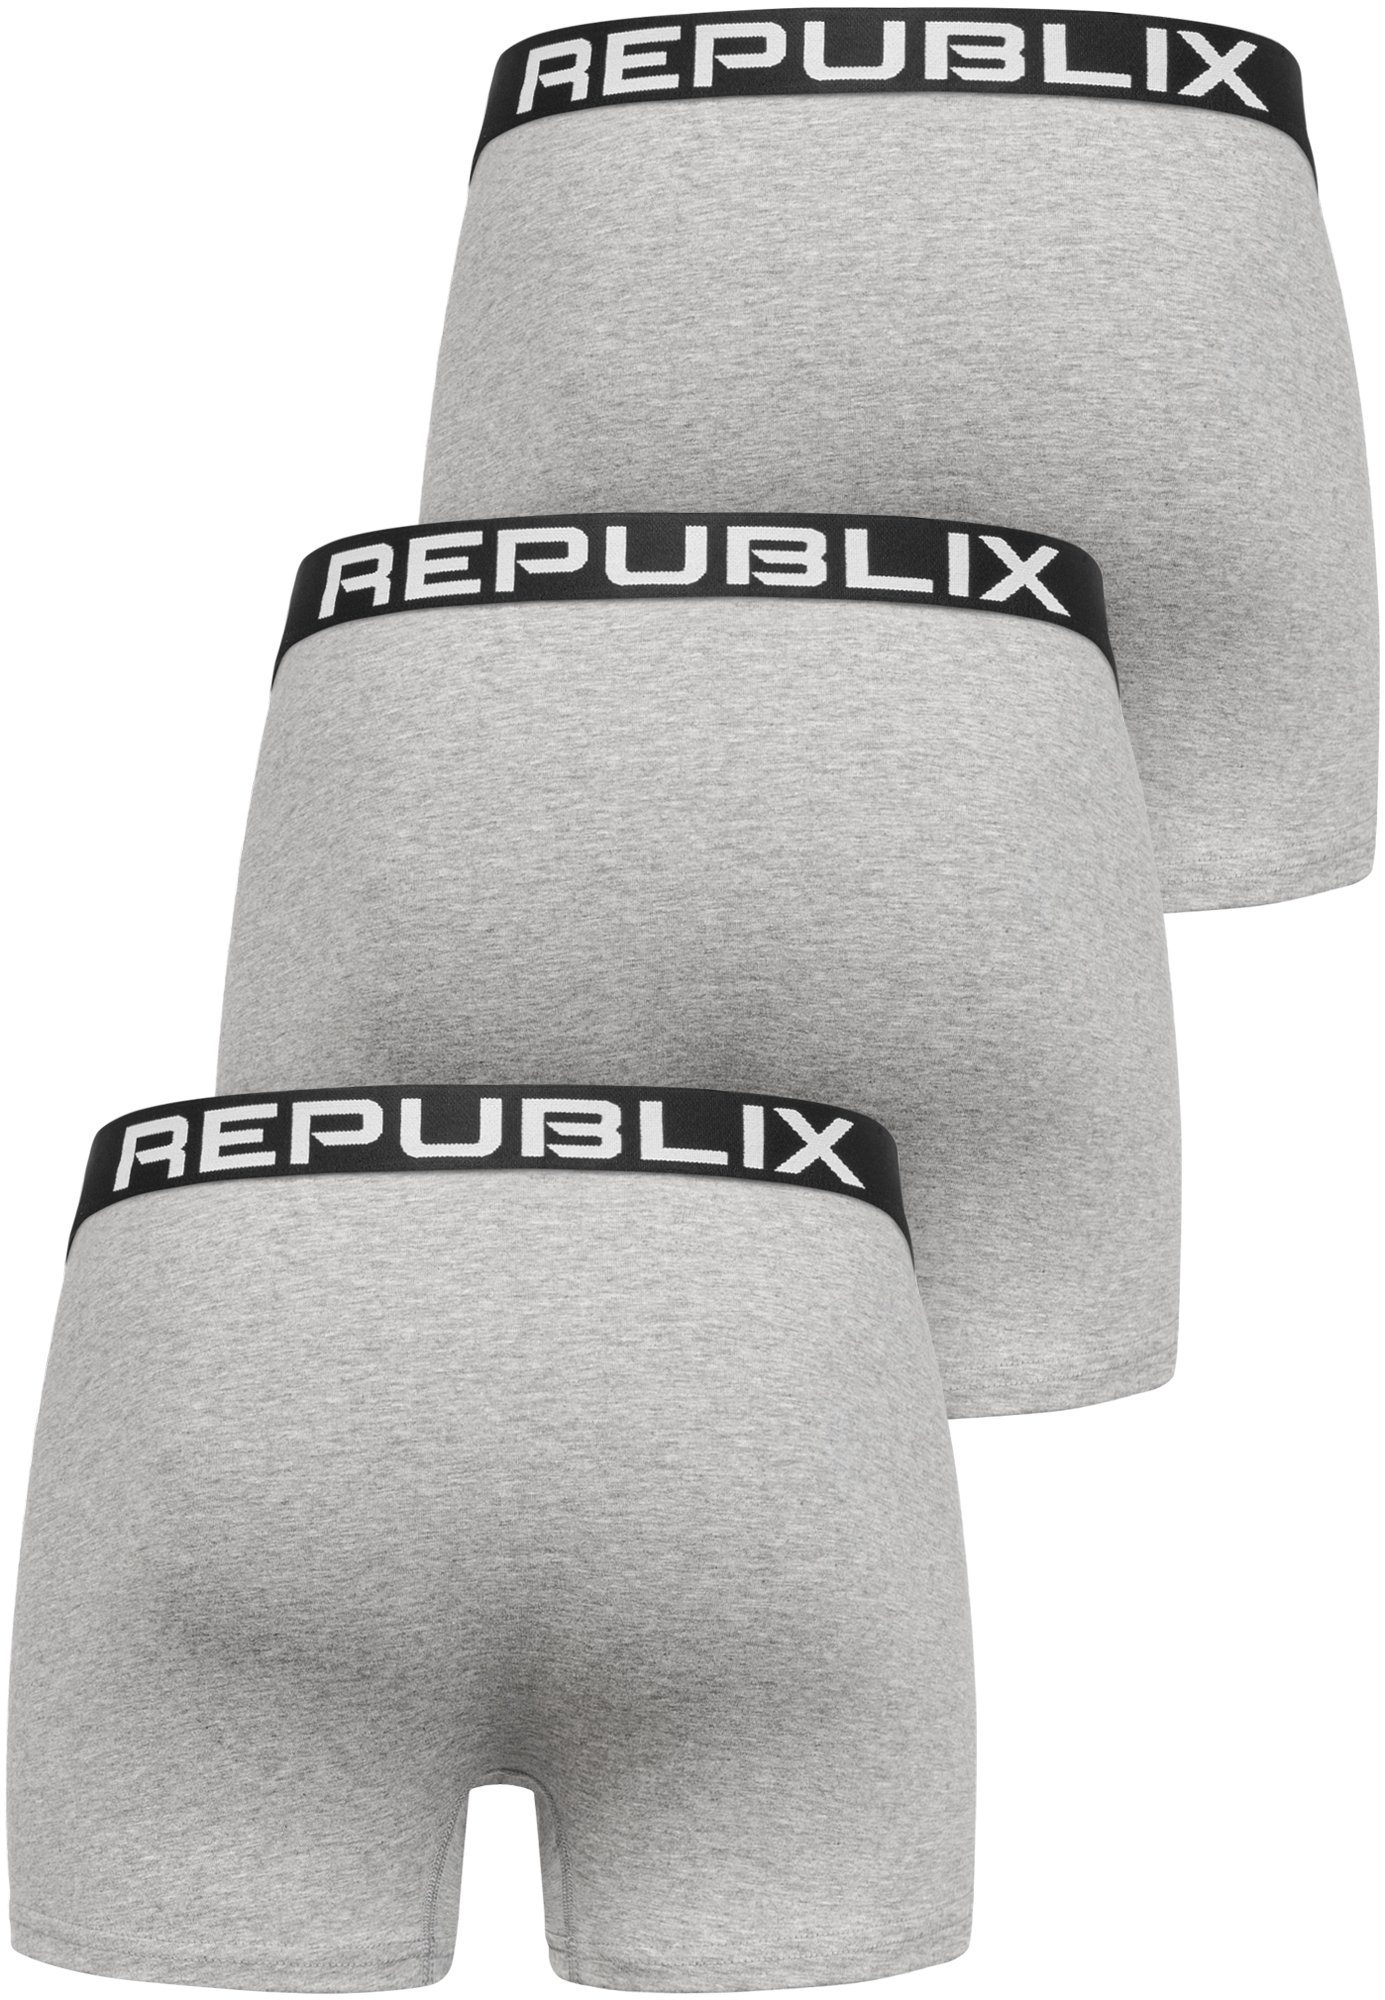 REPUBLIX Boxershorts DON (3er-Pack) Baumwolle Herren Männer Grau/Schwarz Unterhose Unterwäsche